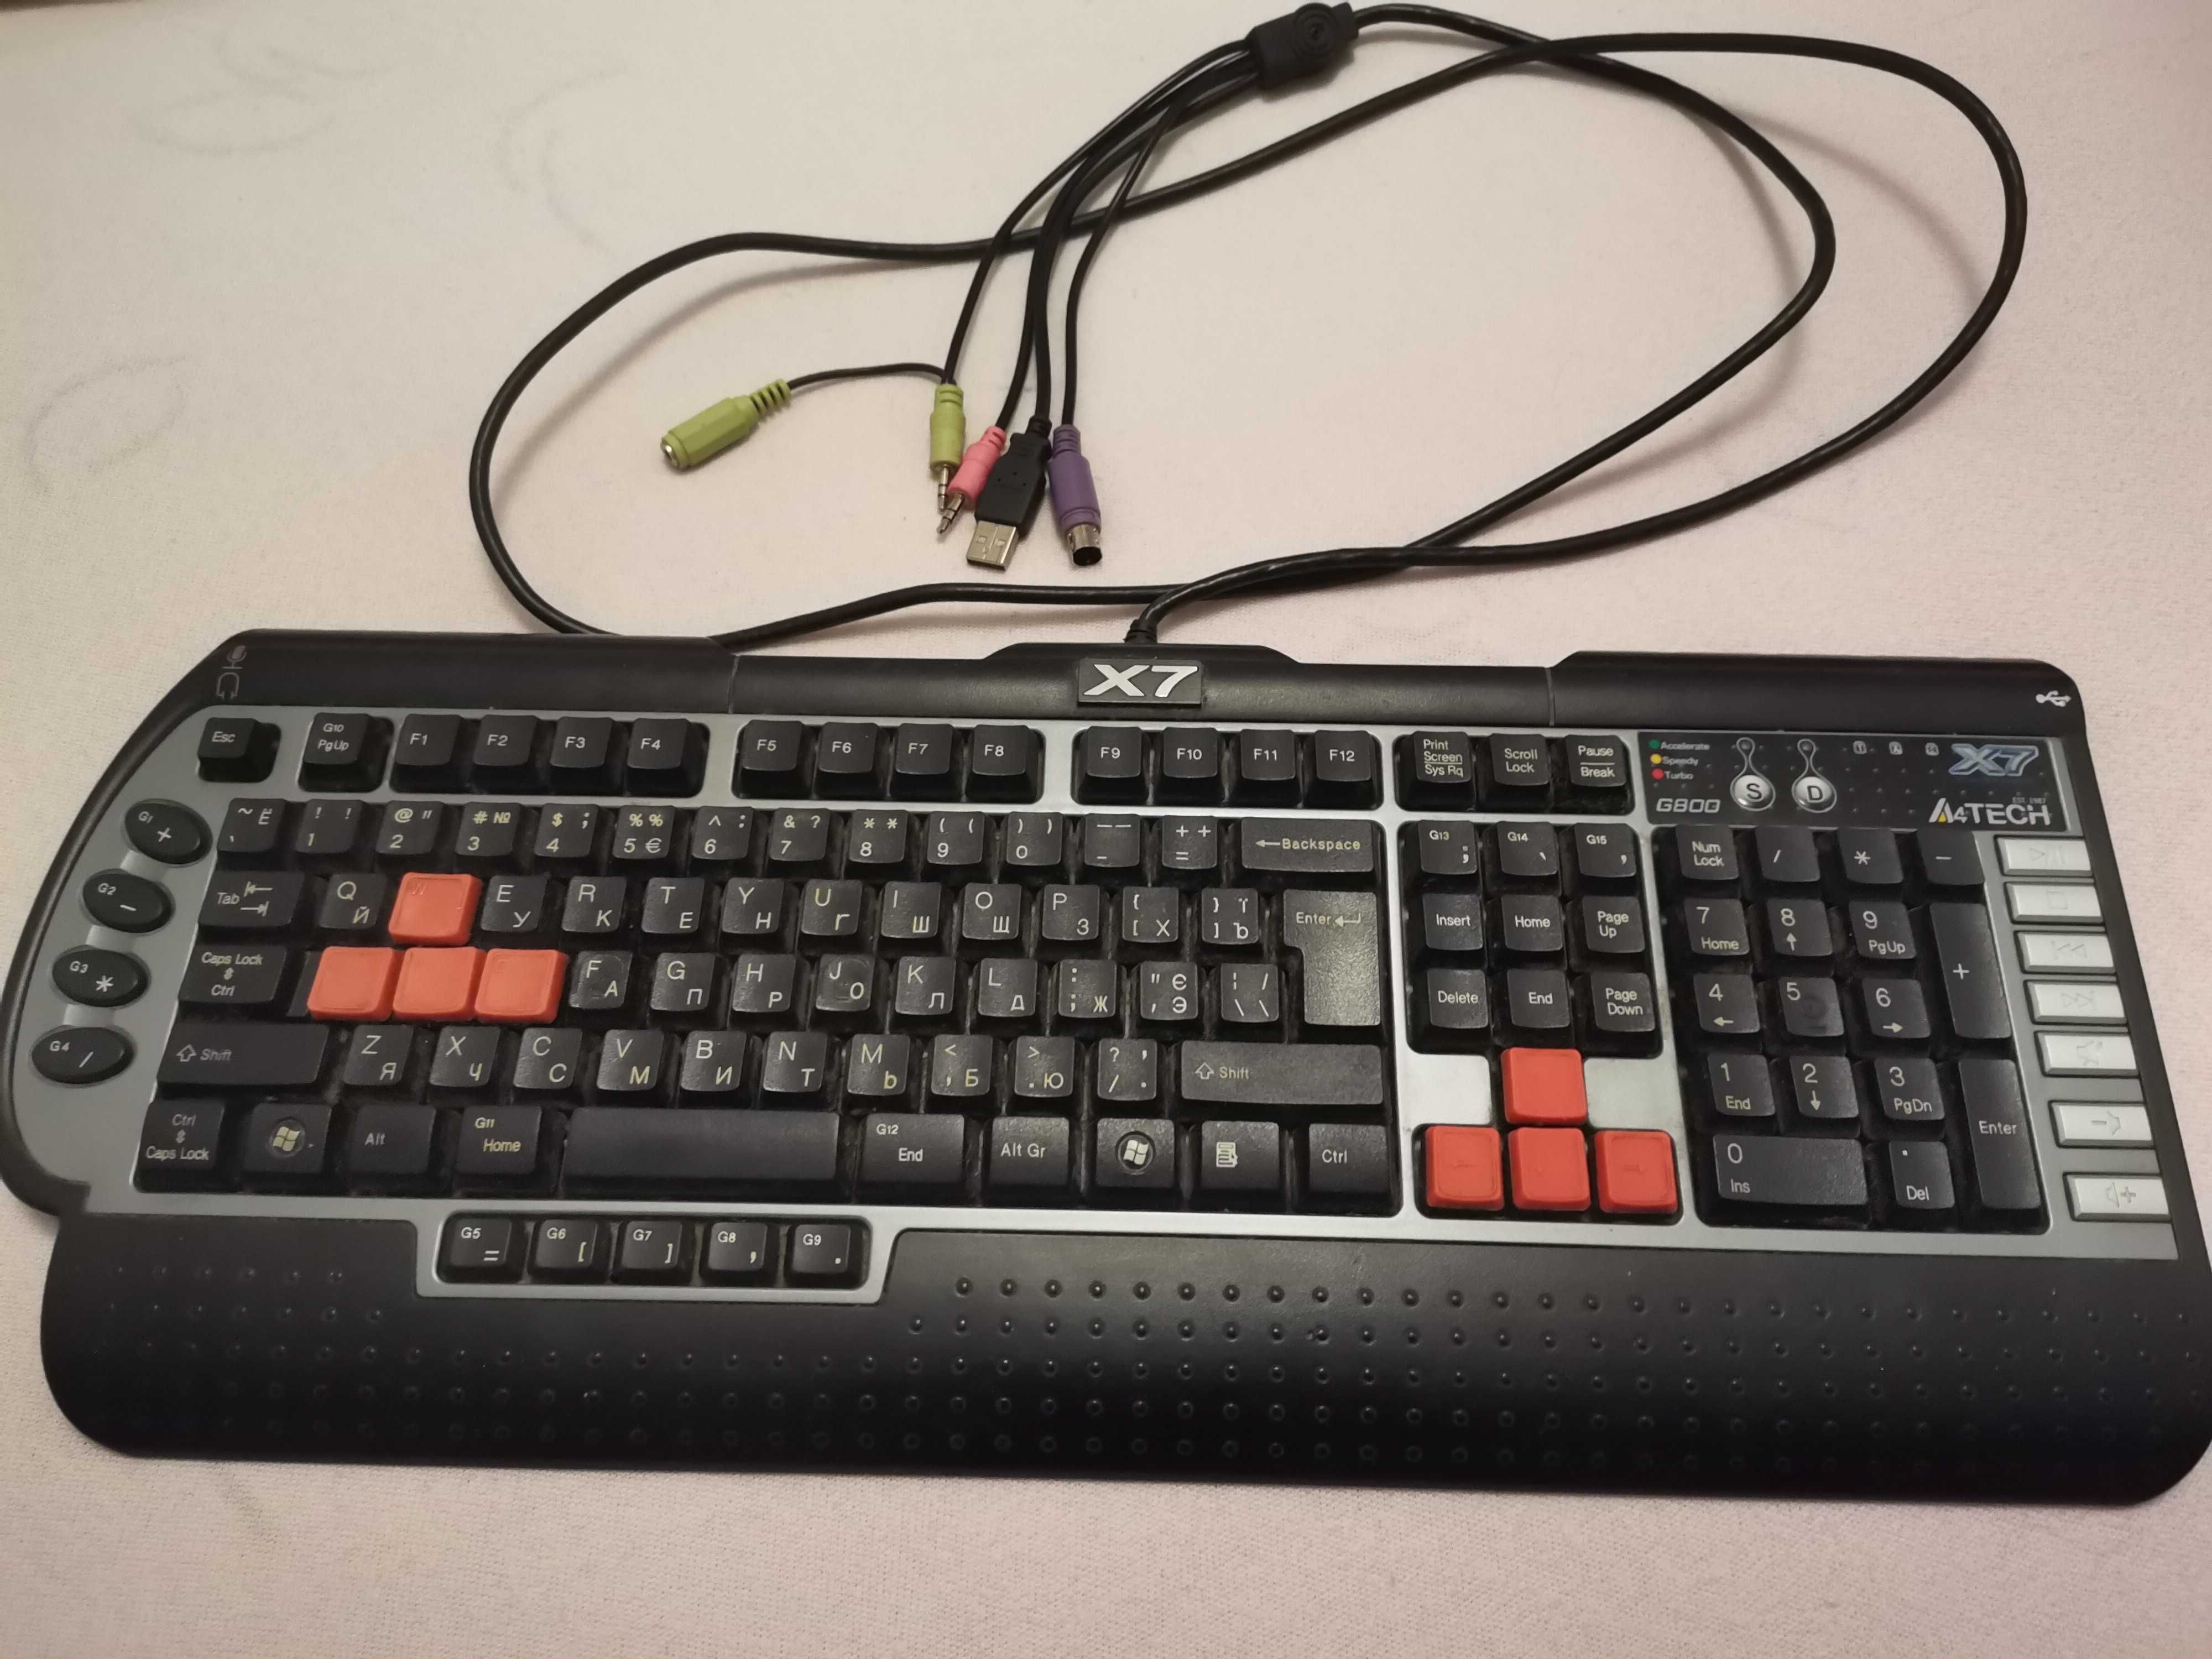 Игровая клавиатура X7 A4TECH G800MU